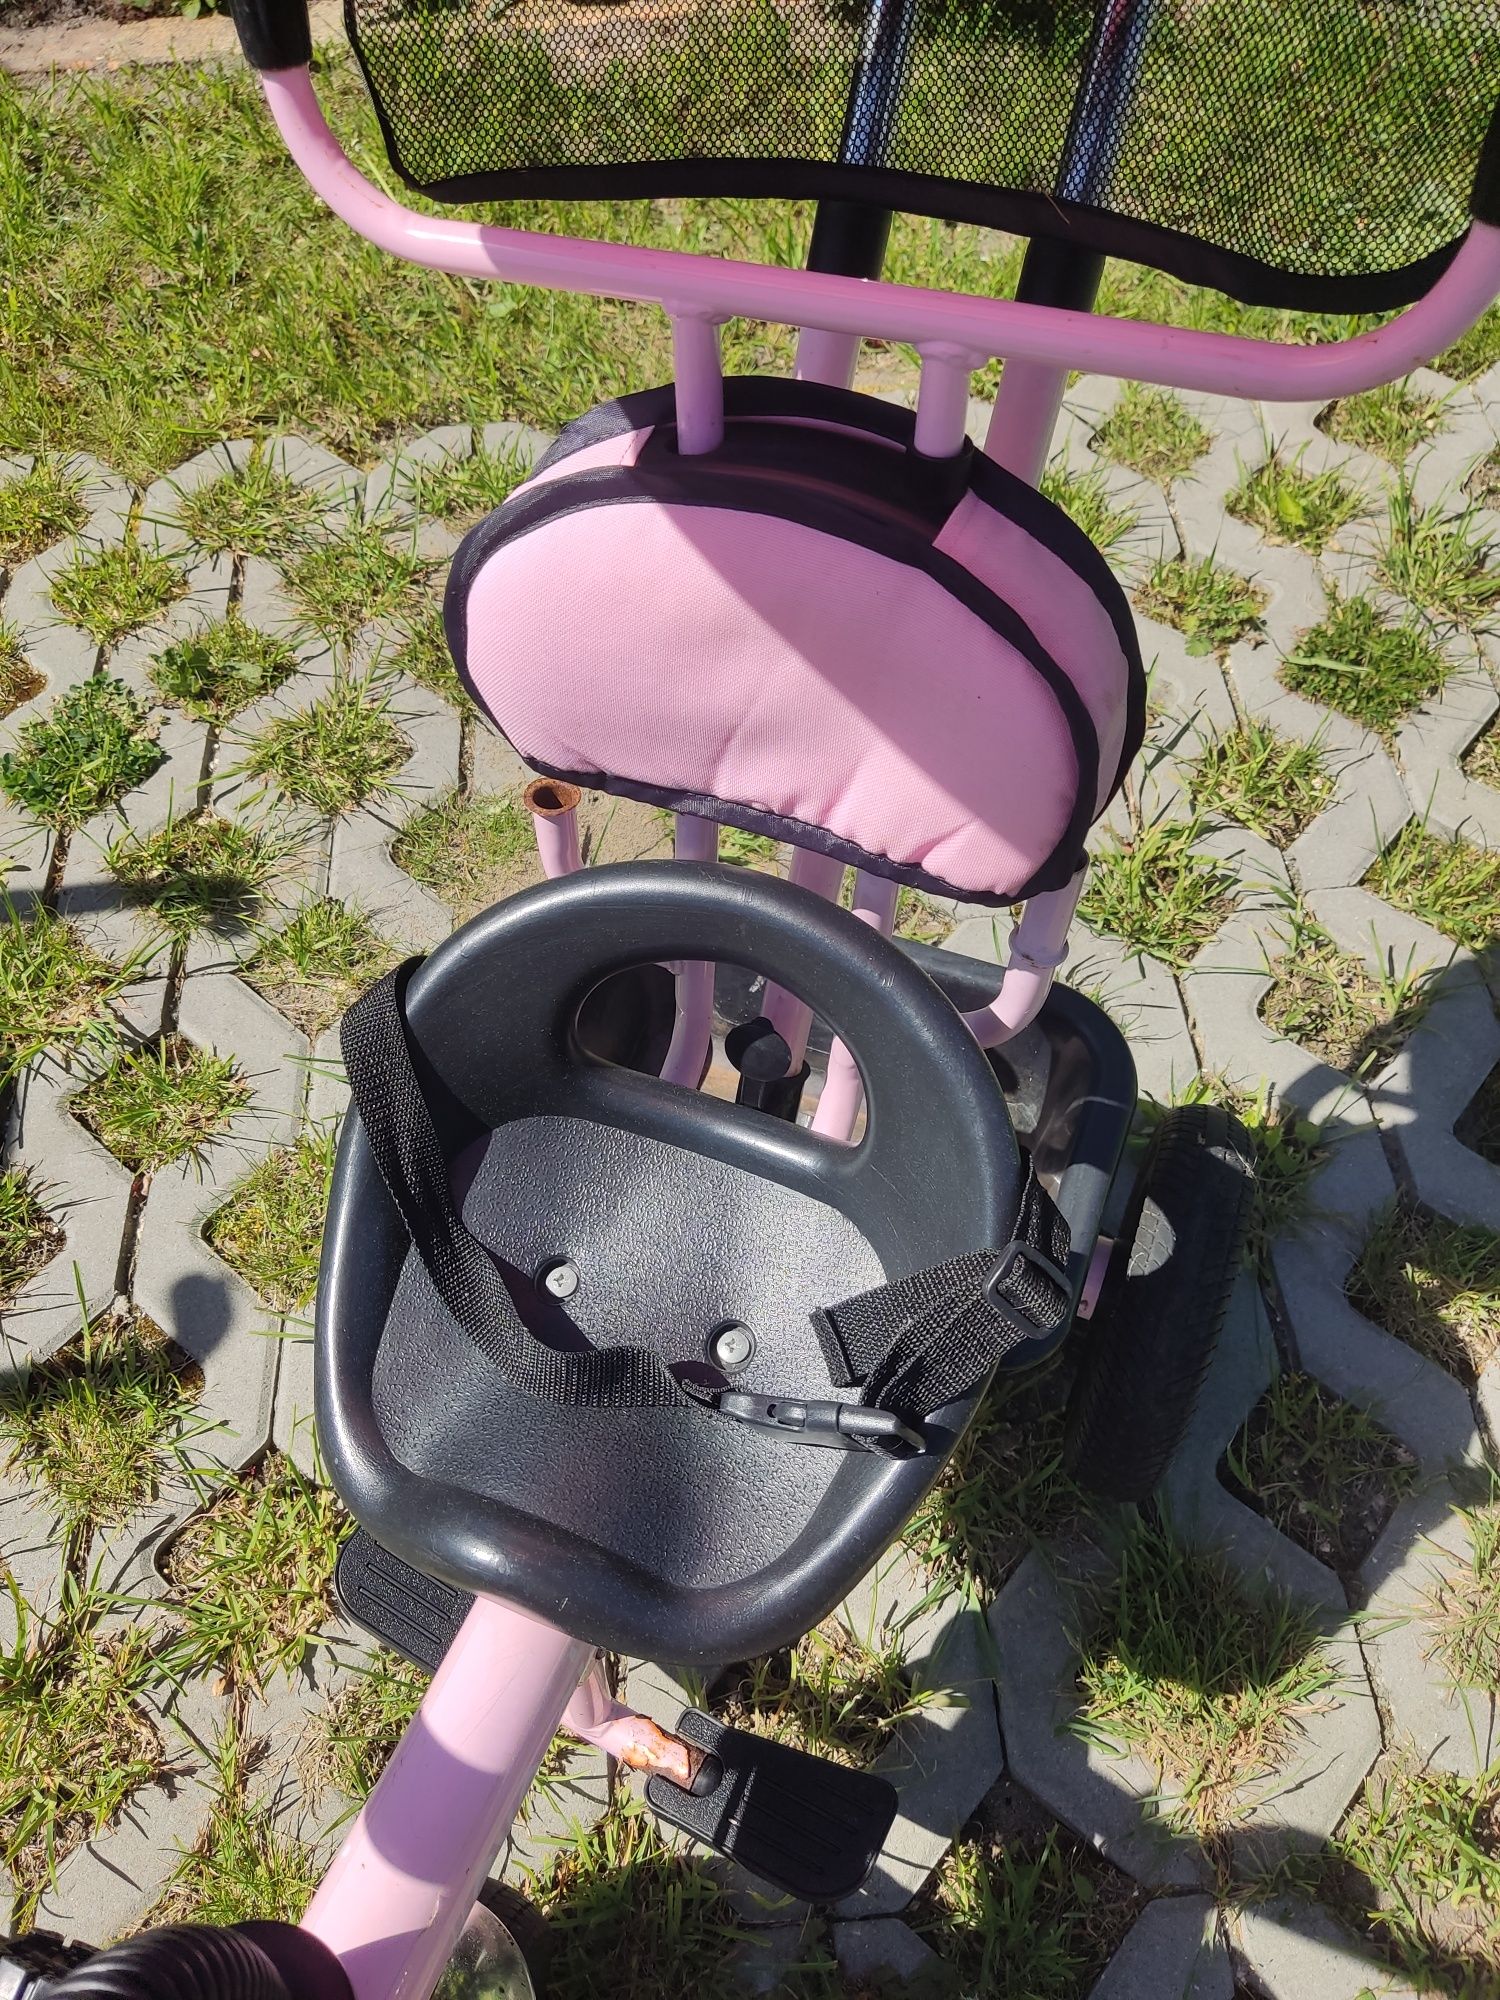 Rowerek trzykołowy różowy dla dziewczynki